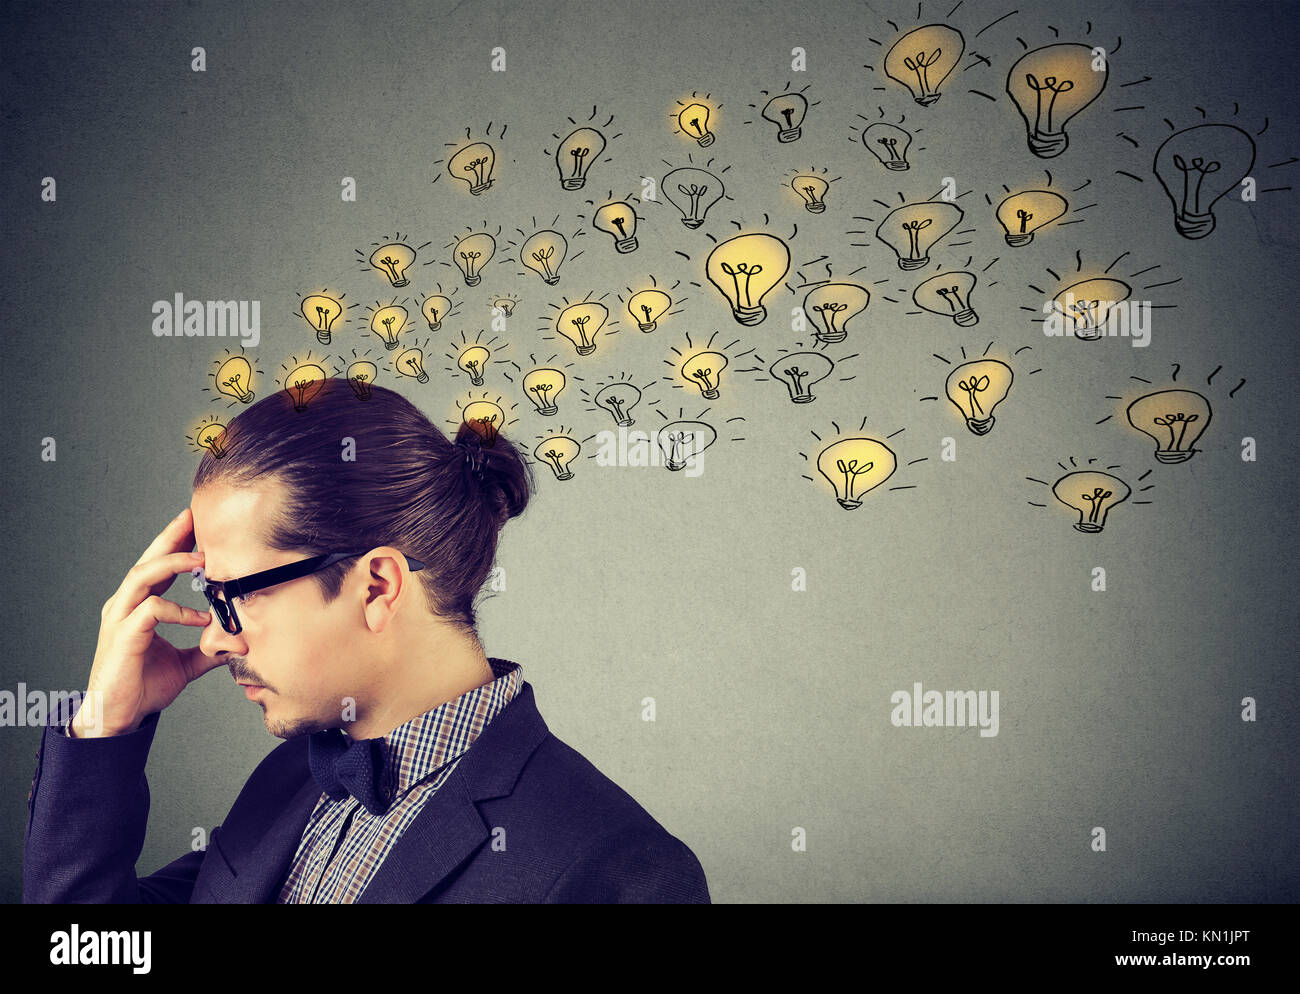 Man wearing nerdy glasses having many ideas thinking organizing thoughts Stock Photo